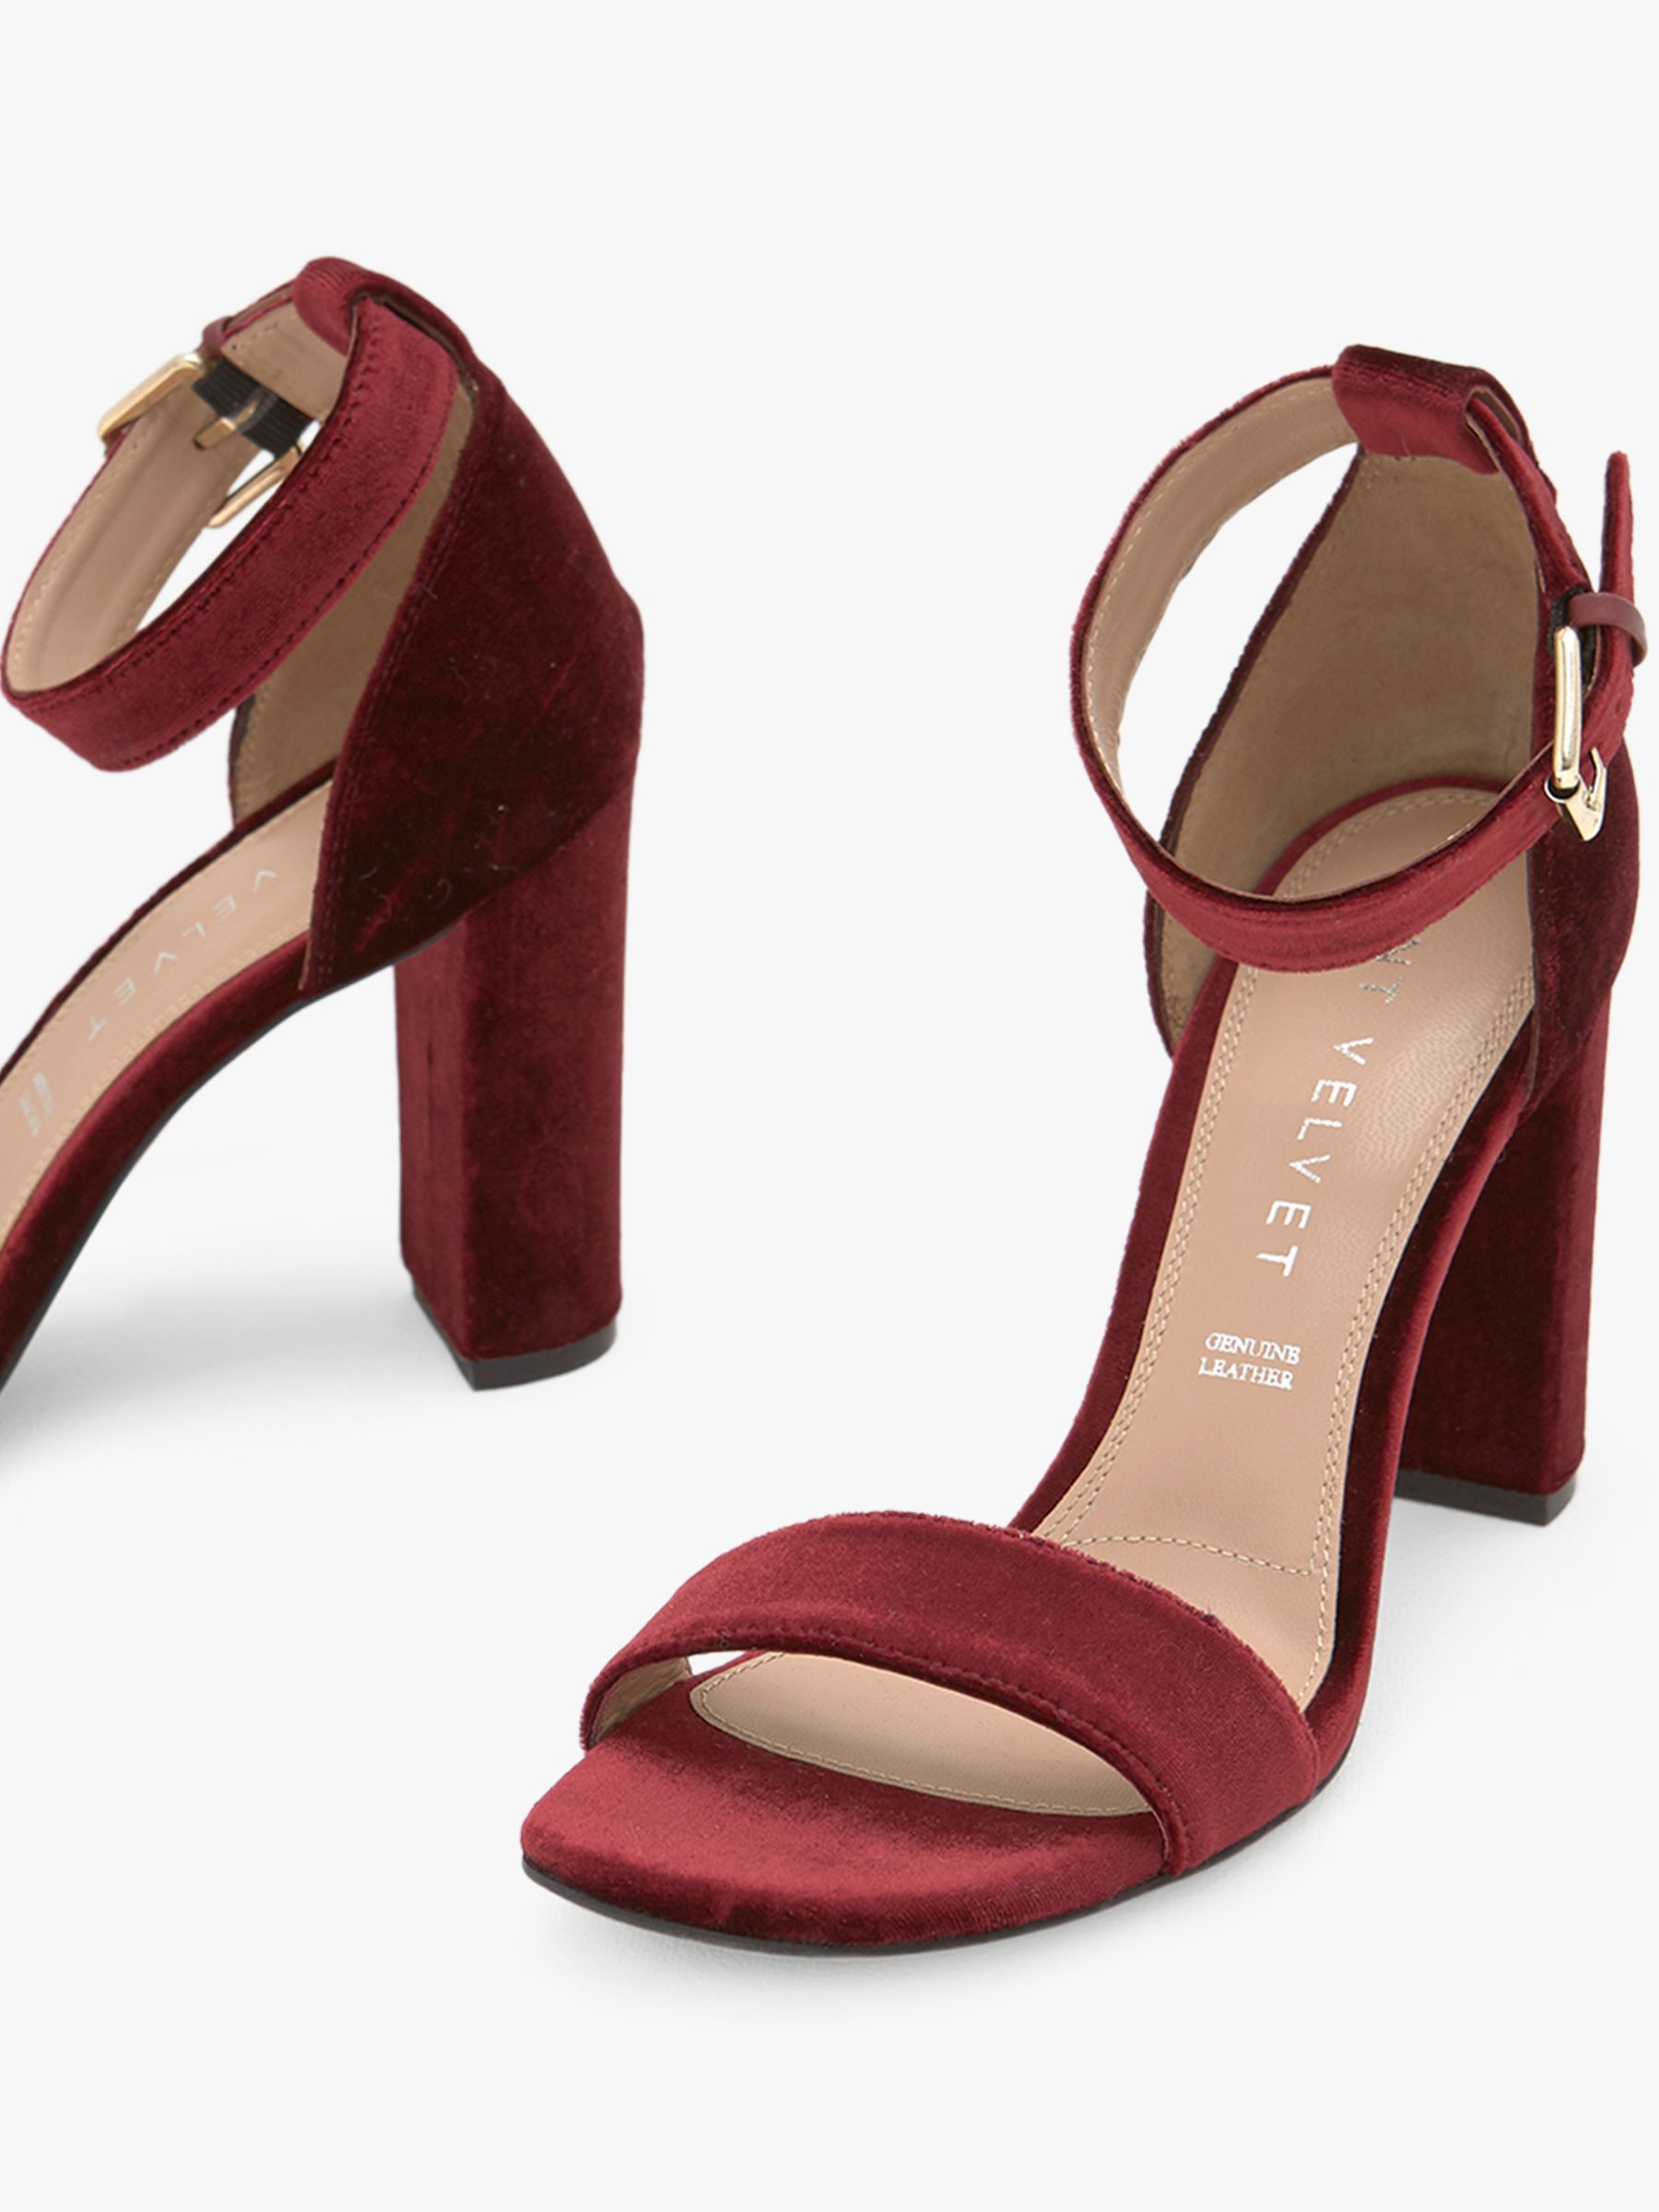 dark red strappy heels